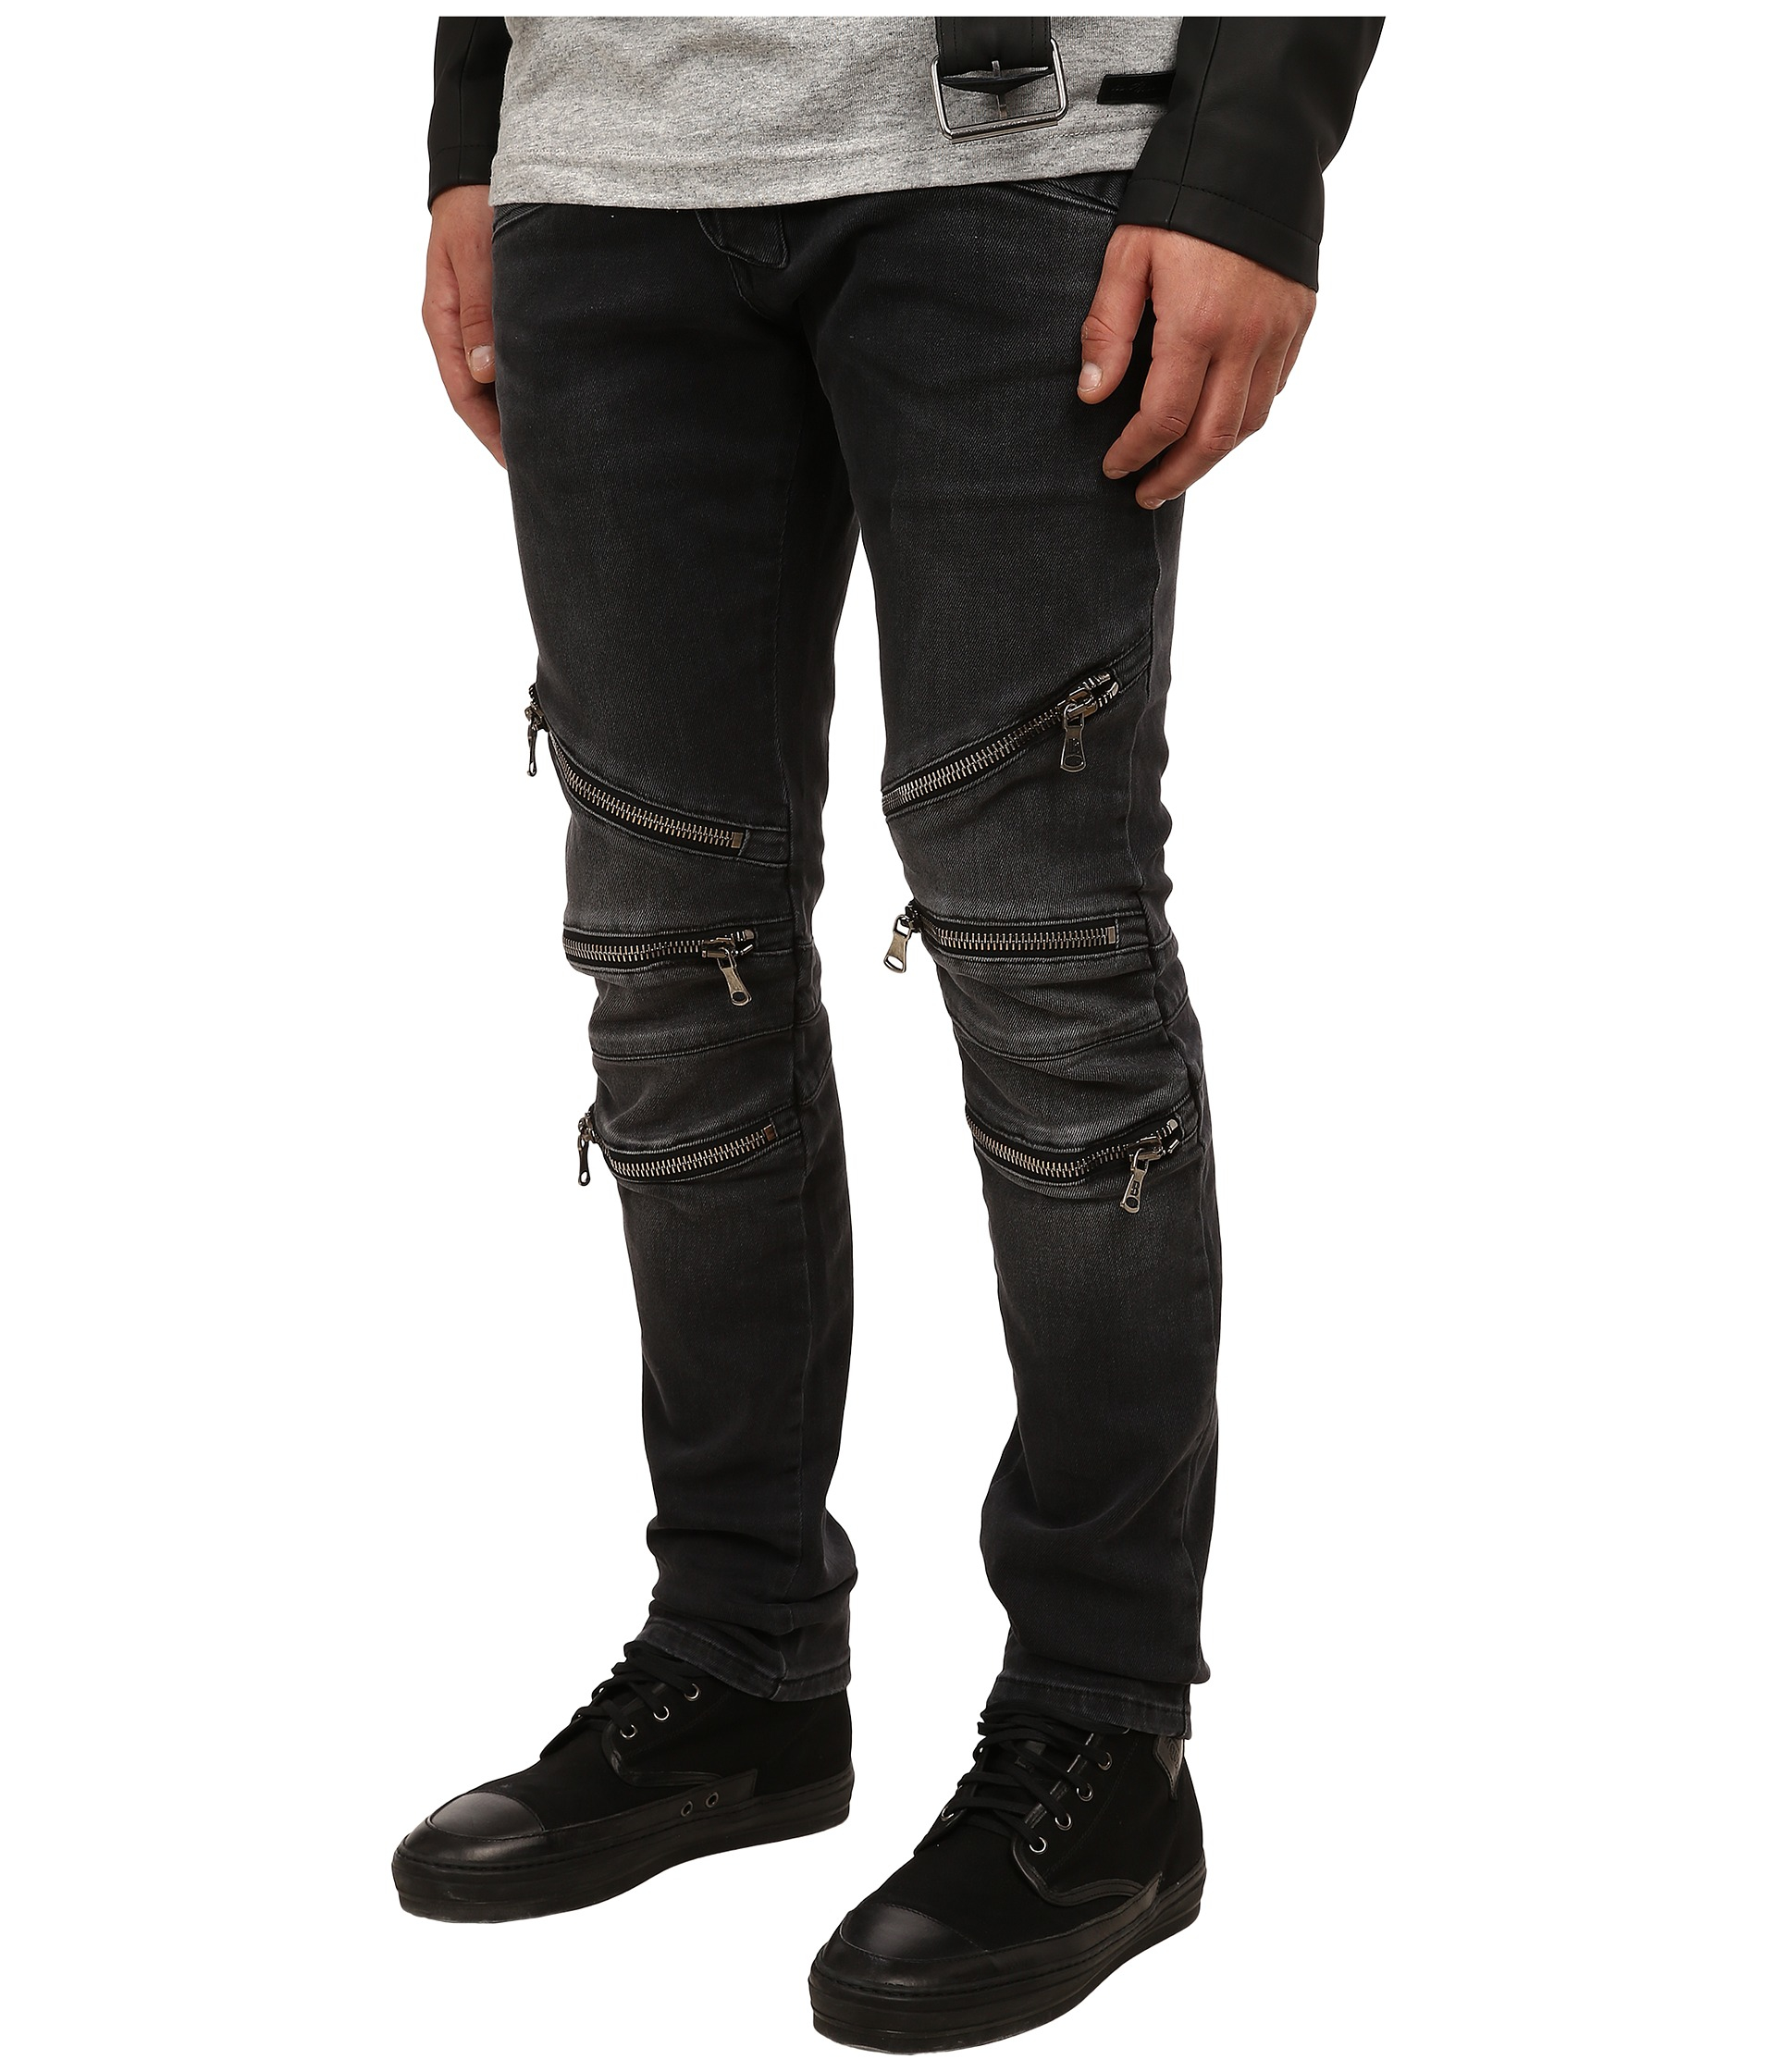 Lyst - Balmain Zipper Jeans in Black for Men